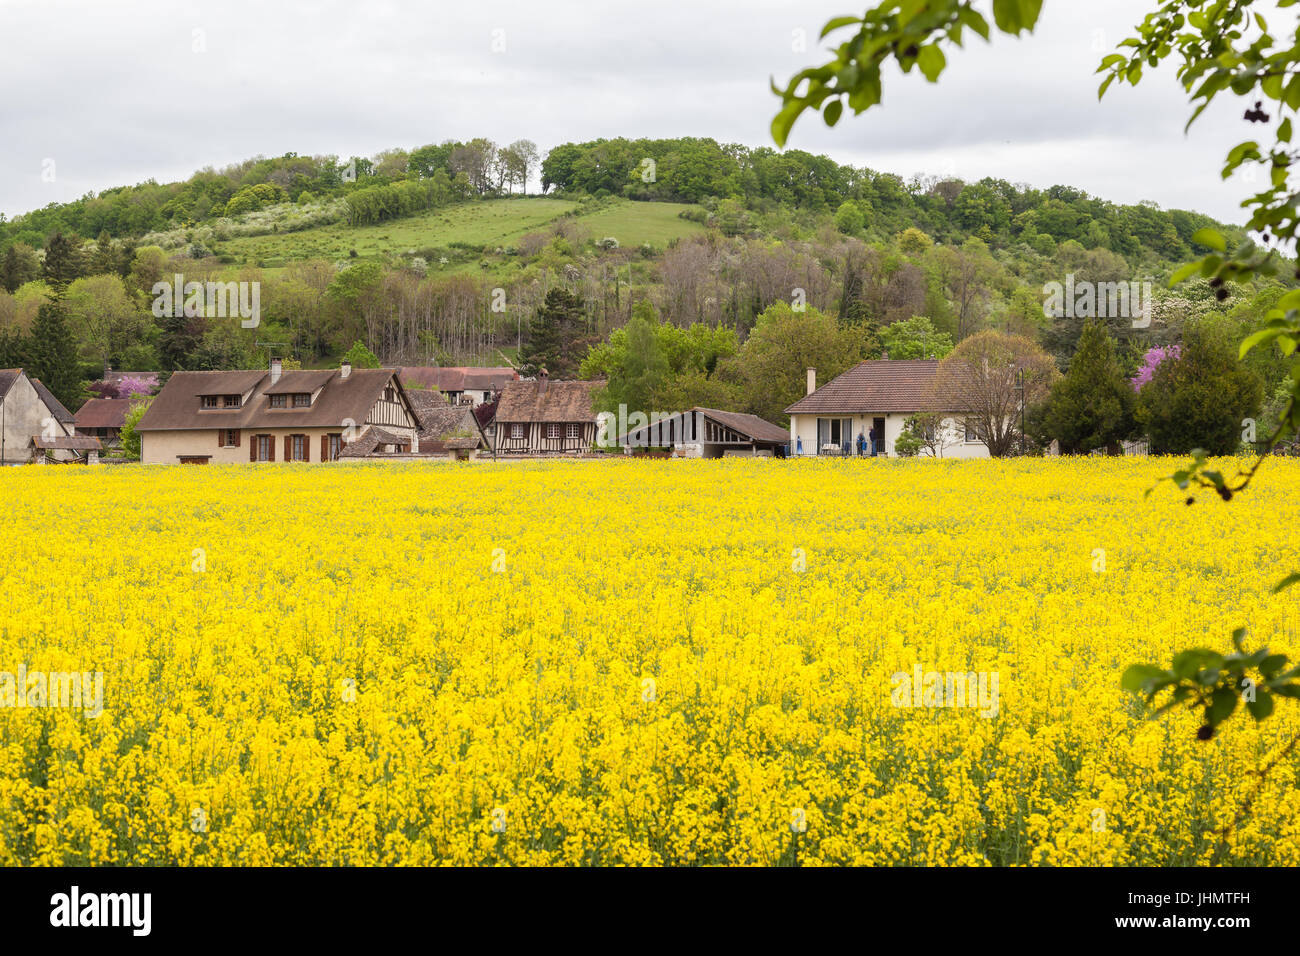 Raps-Feld mit Dorf Giverny und Hügel im Hintergrund an Giverny, Frankreich, einem Dorf westlich von Paris. Es ist bekannt als der Ort, wo Maler Claude Mo Stockfoto